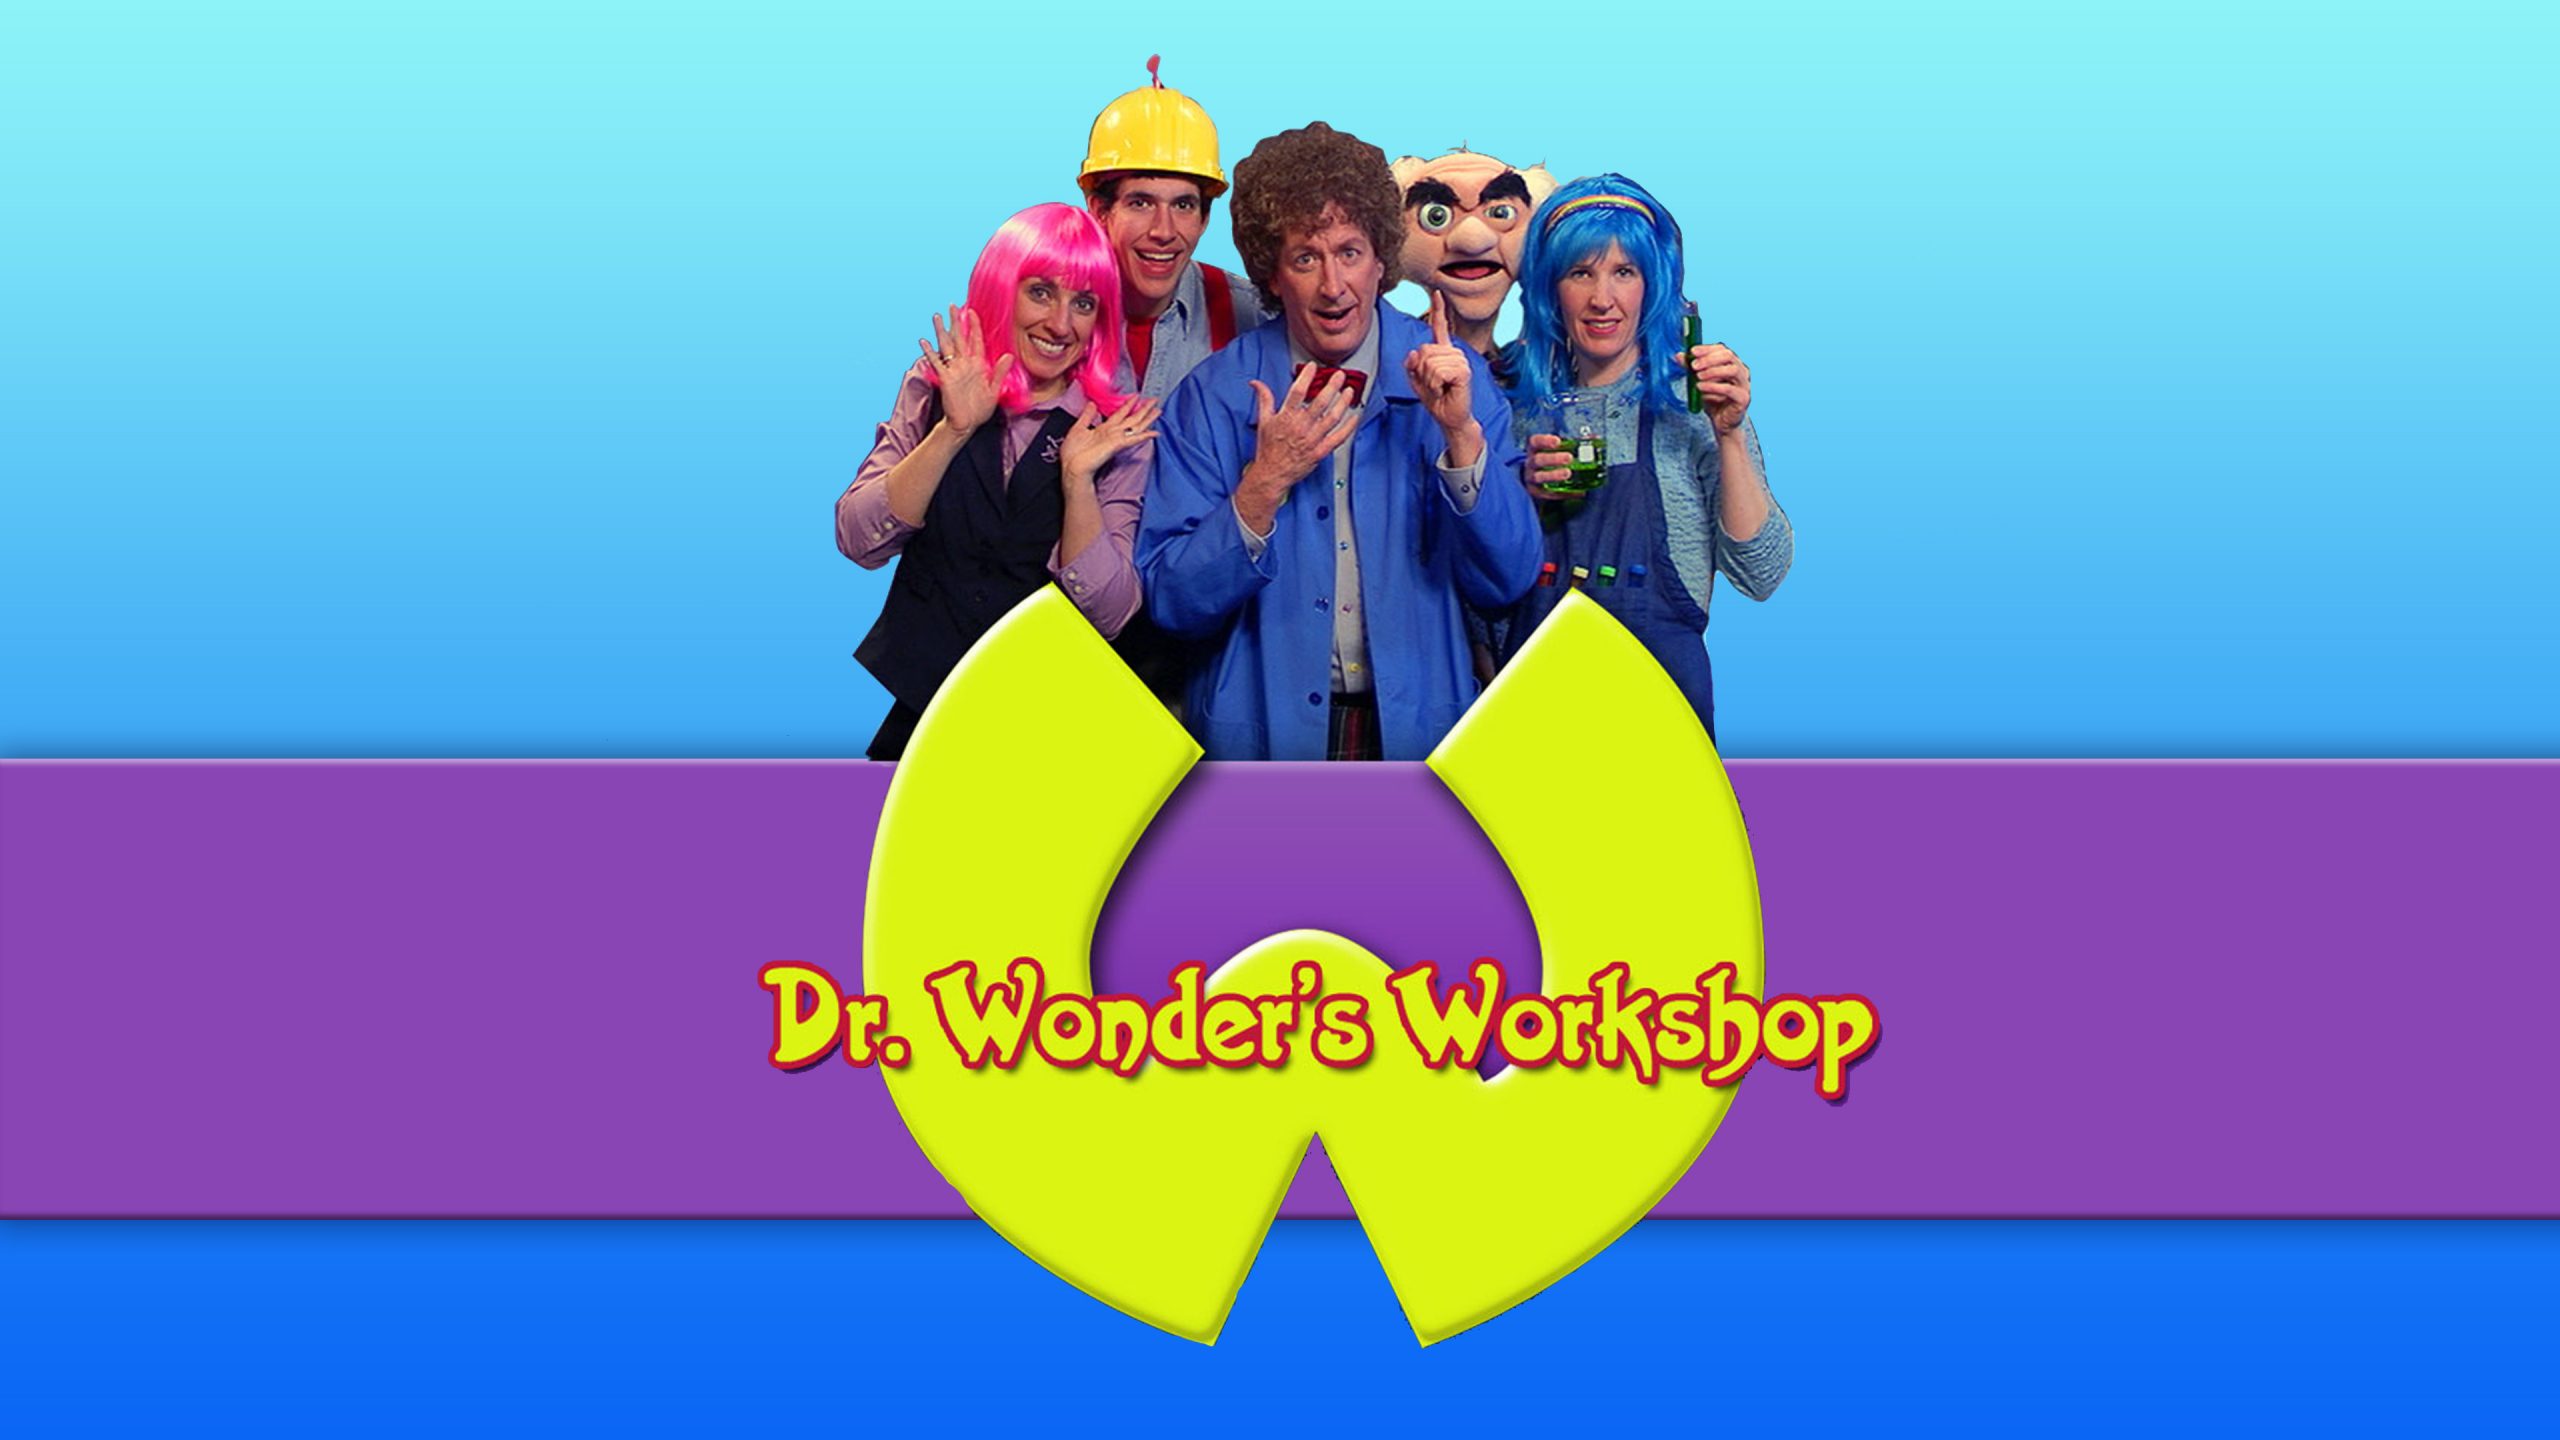 Dr. Wonder's Workshop  CornerStone Television Network